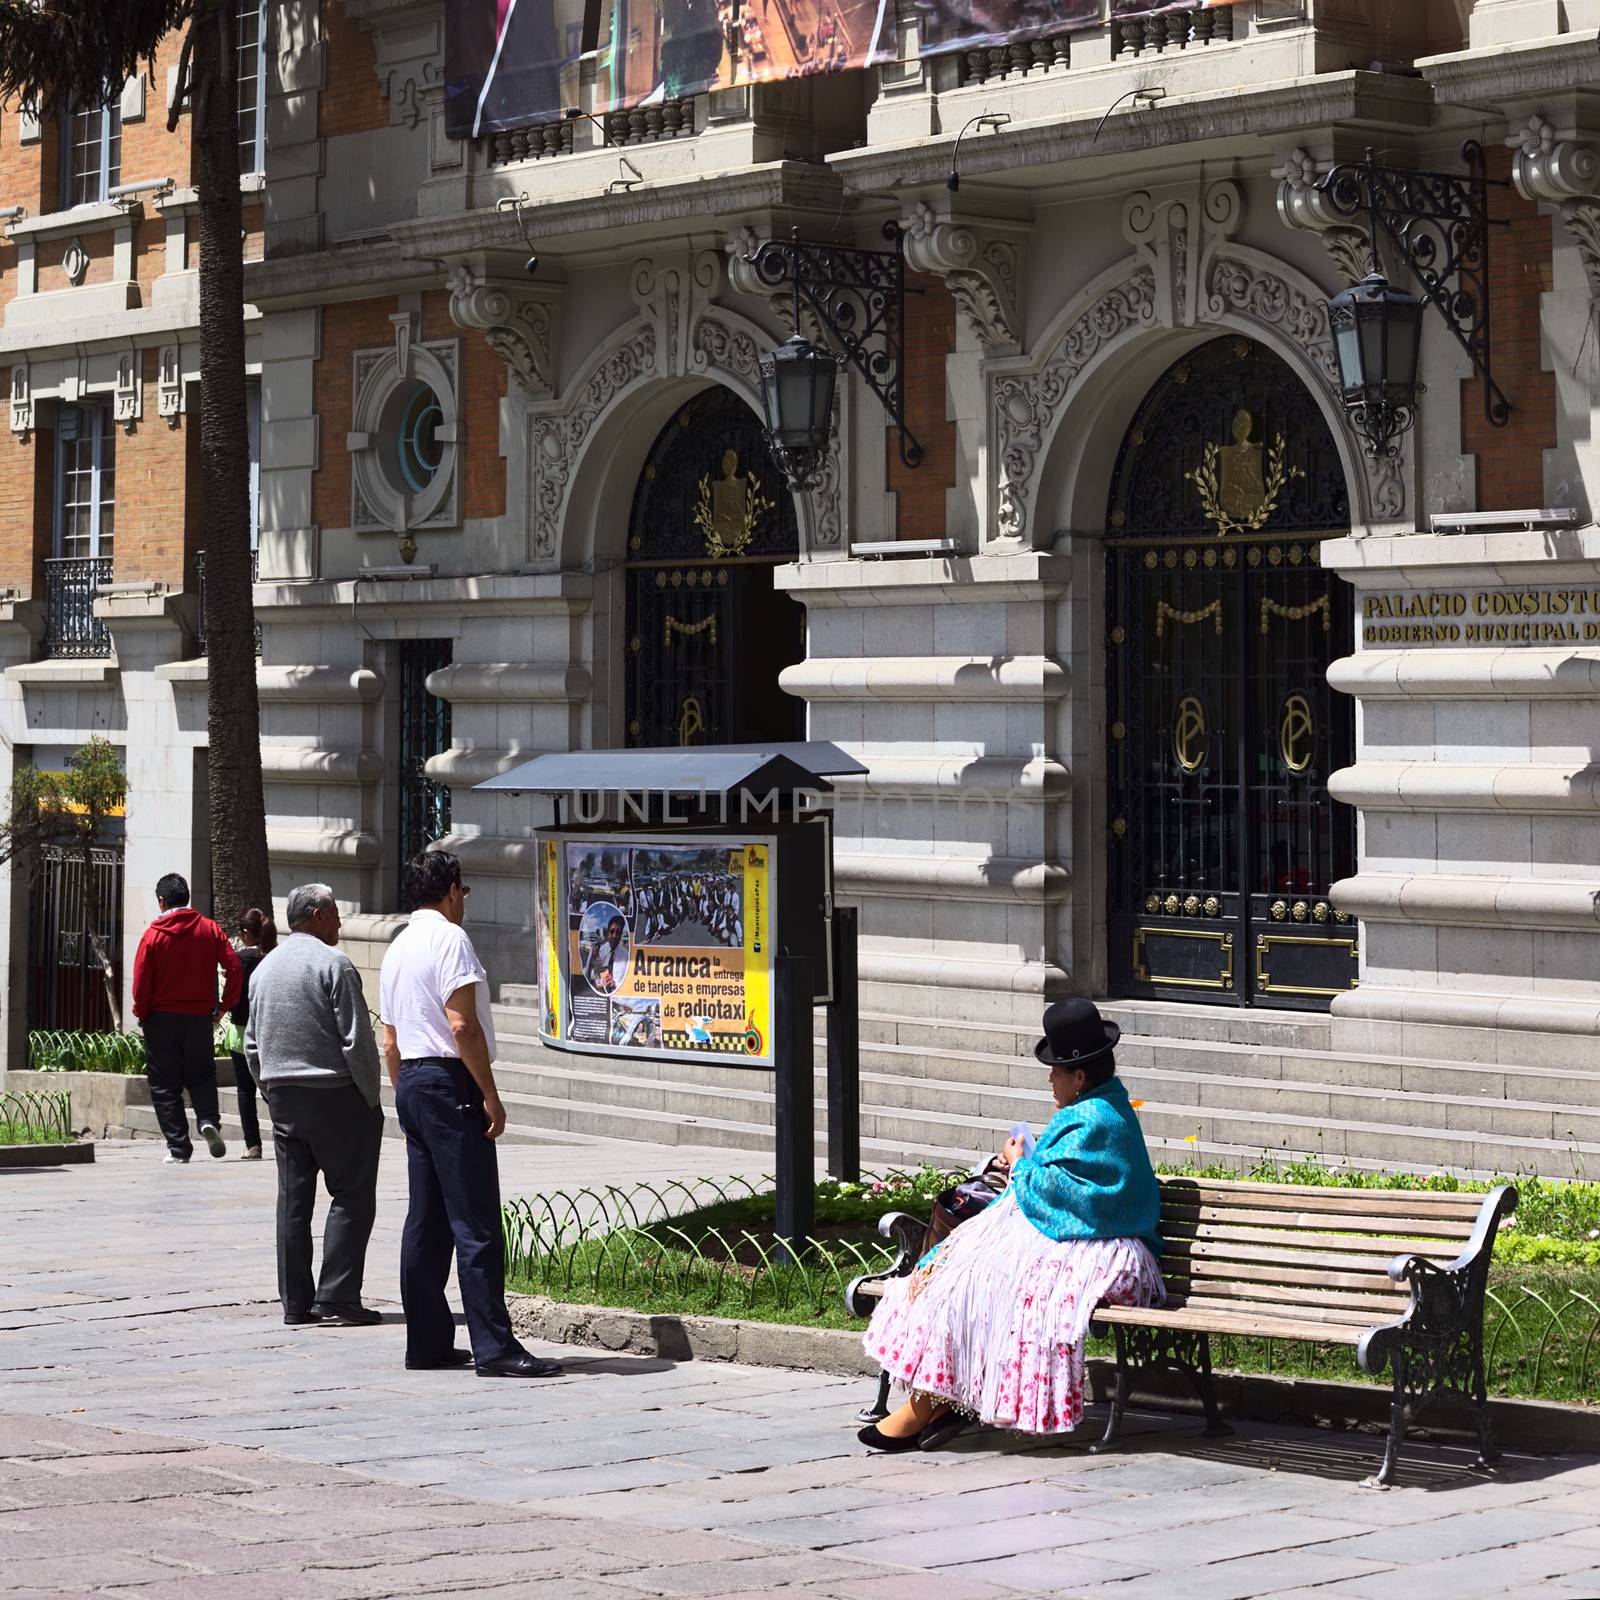 City Hall in La Paz, Bolivia by ildi